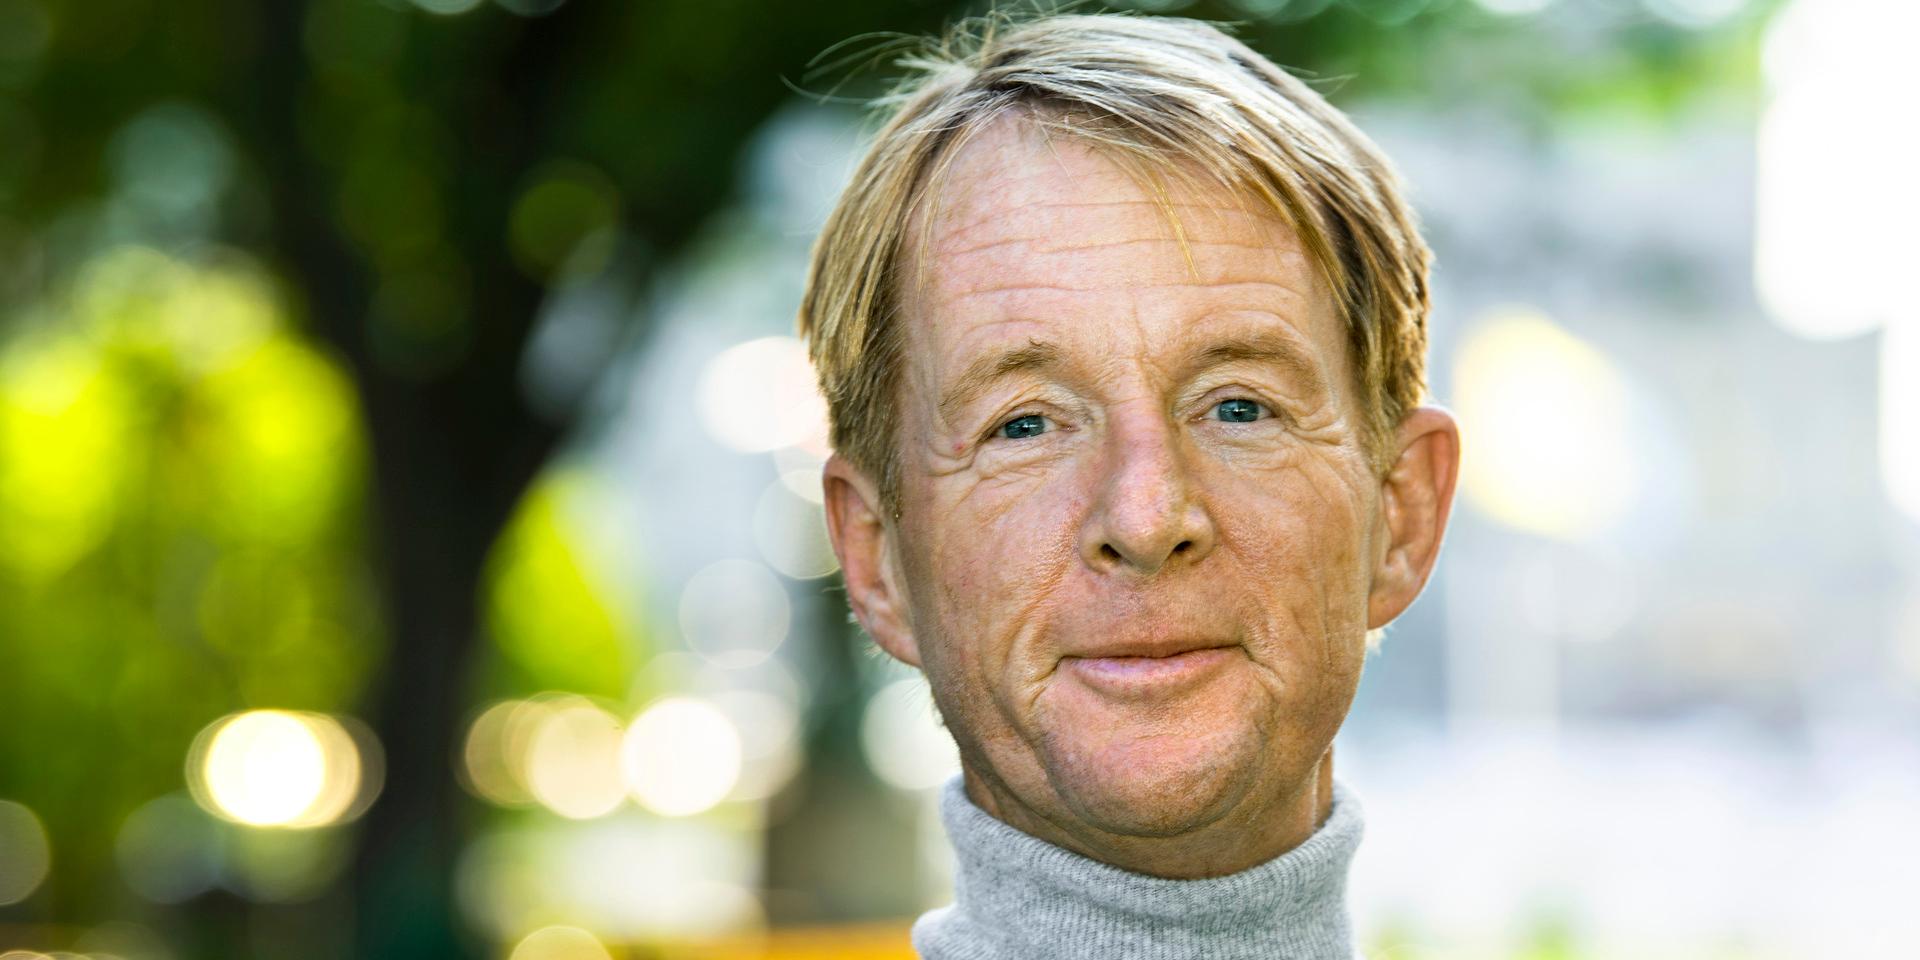 
Björn Natthiko Lindeblad gick bort i måndags. Han hade varit diagnostiserad med nervsjukdomen ALS sedan 2018.